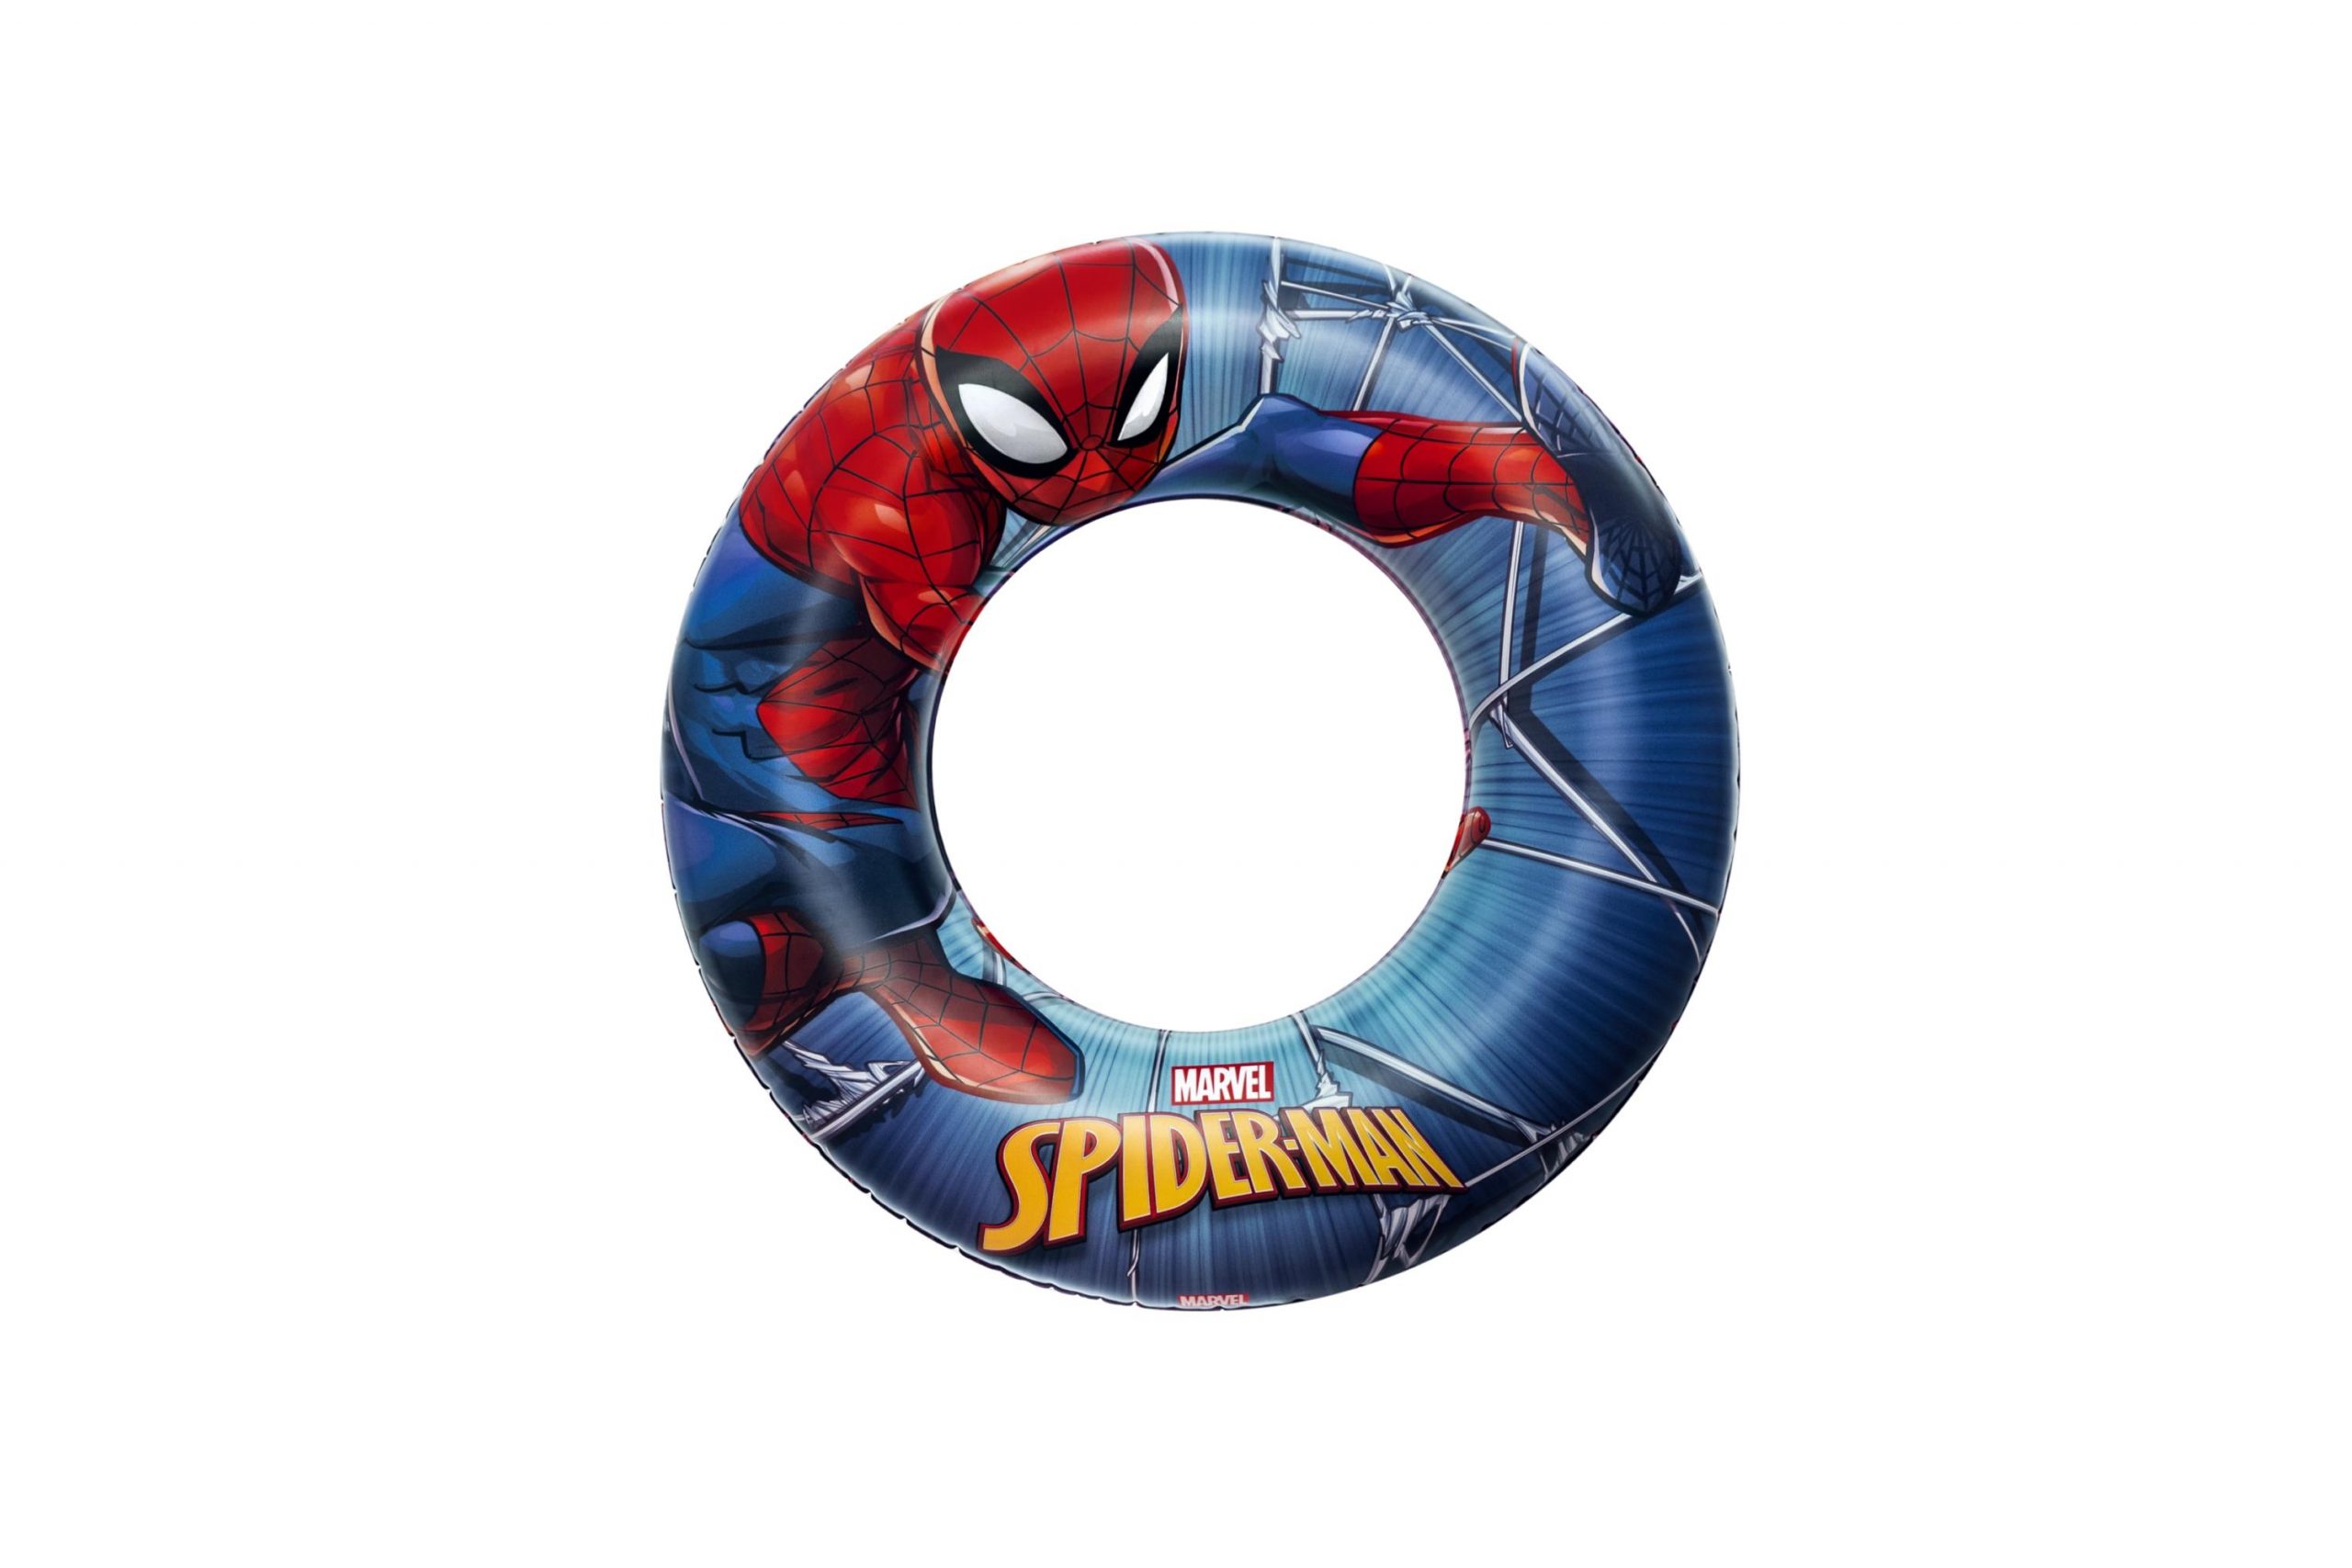 Salvagente spider-man cm. 56 - Bestway, Avengers, Spiderman